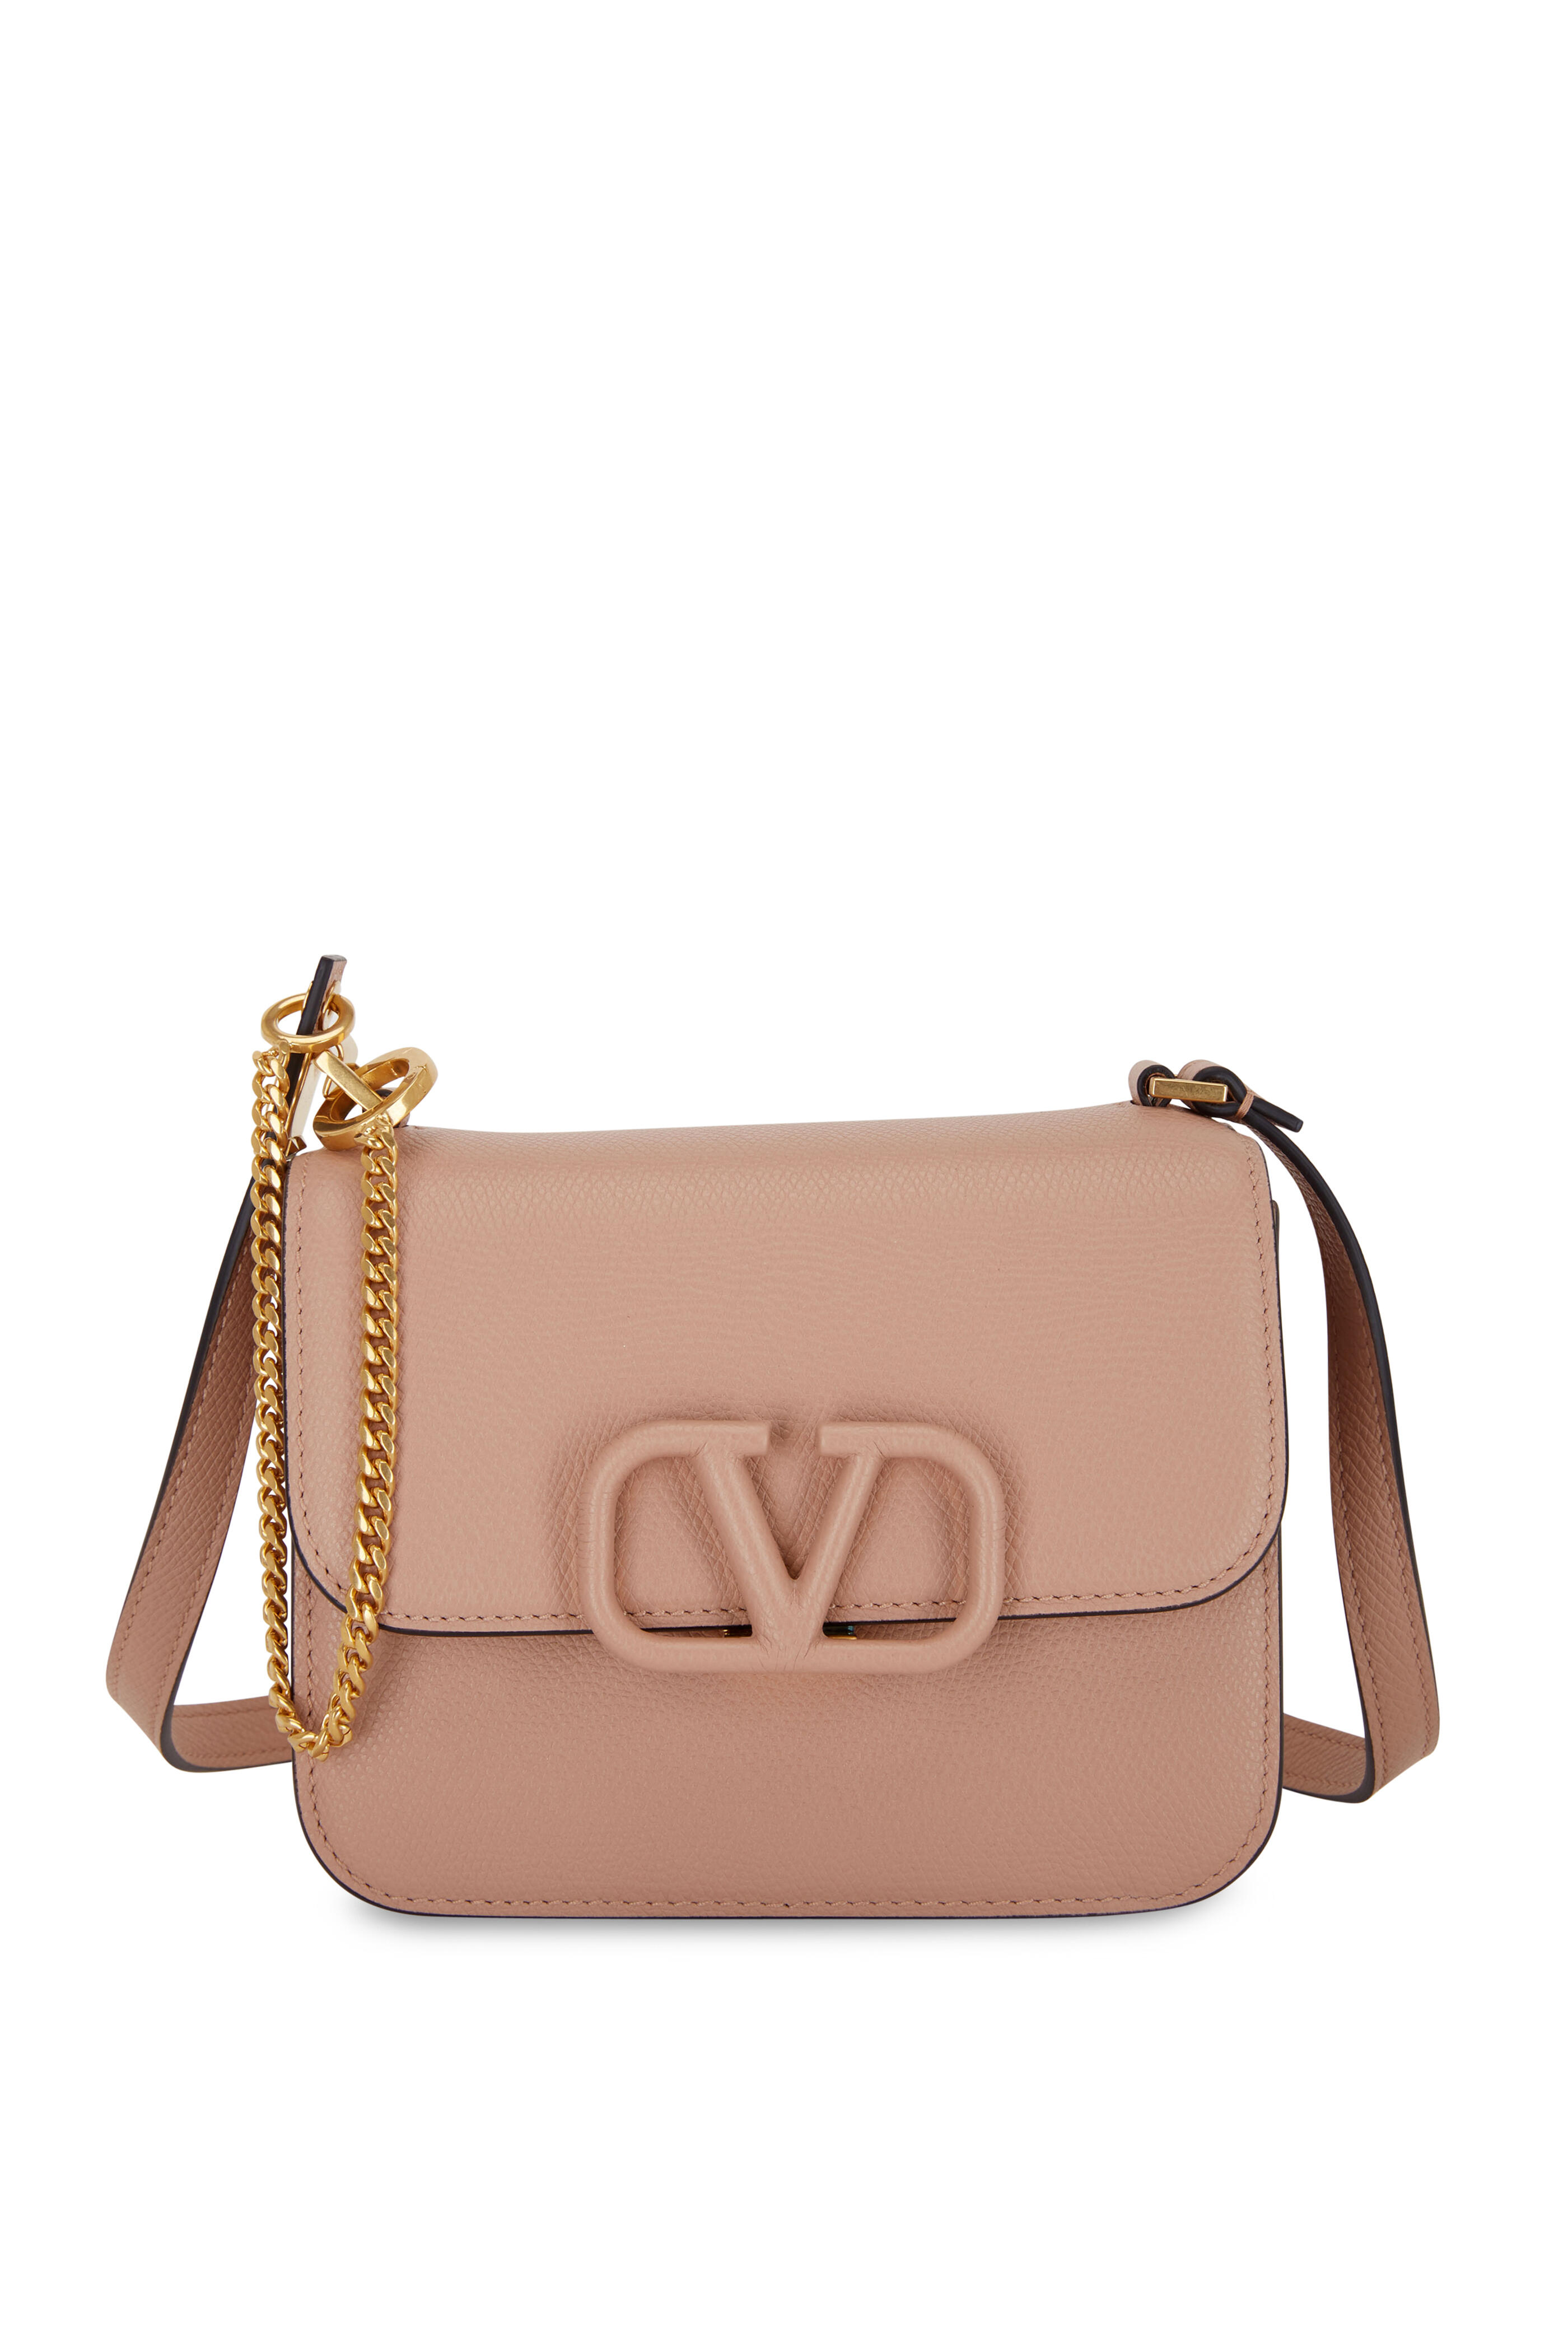 Valentino Rose Cannelle Leather V-Ring Shoulder Bag